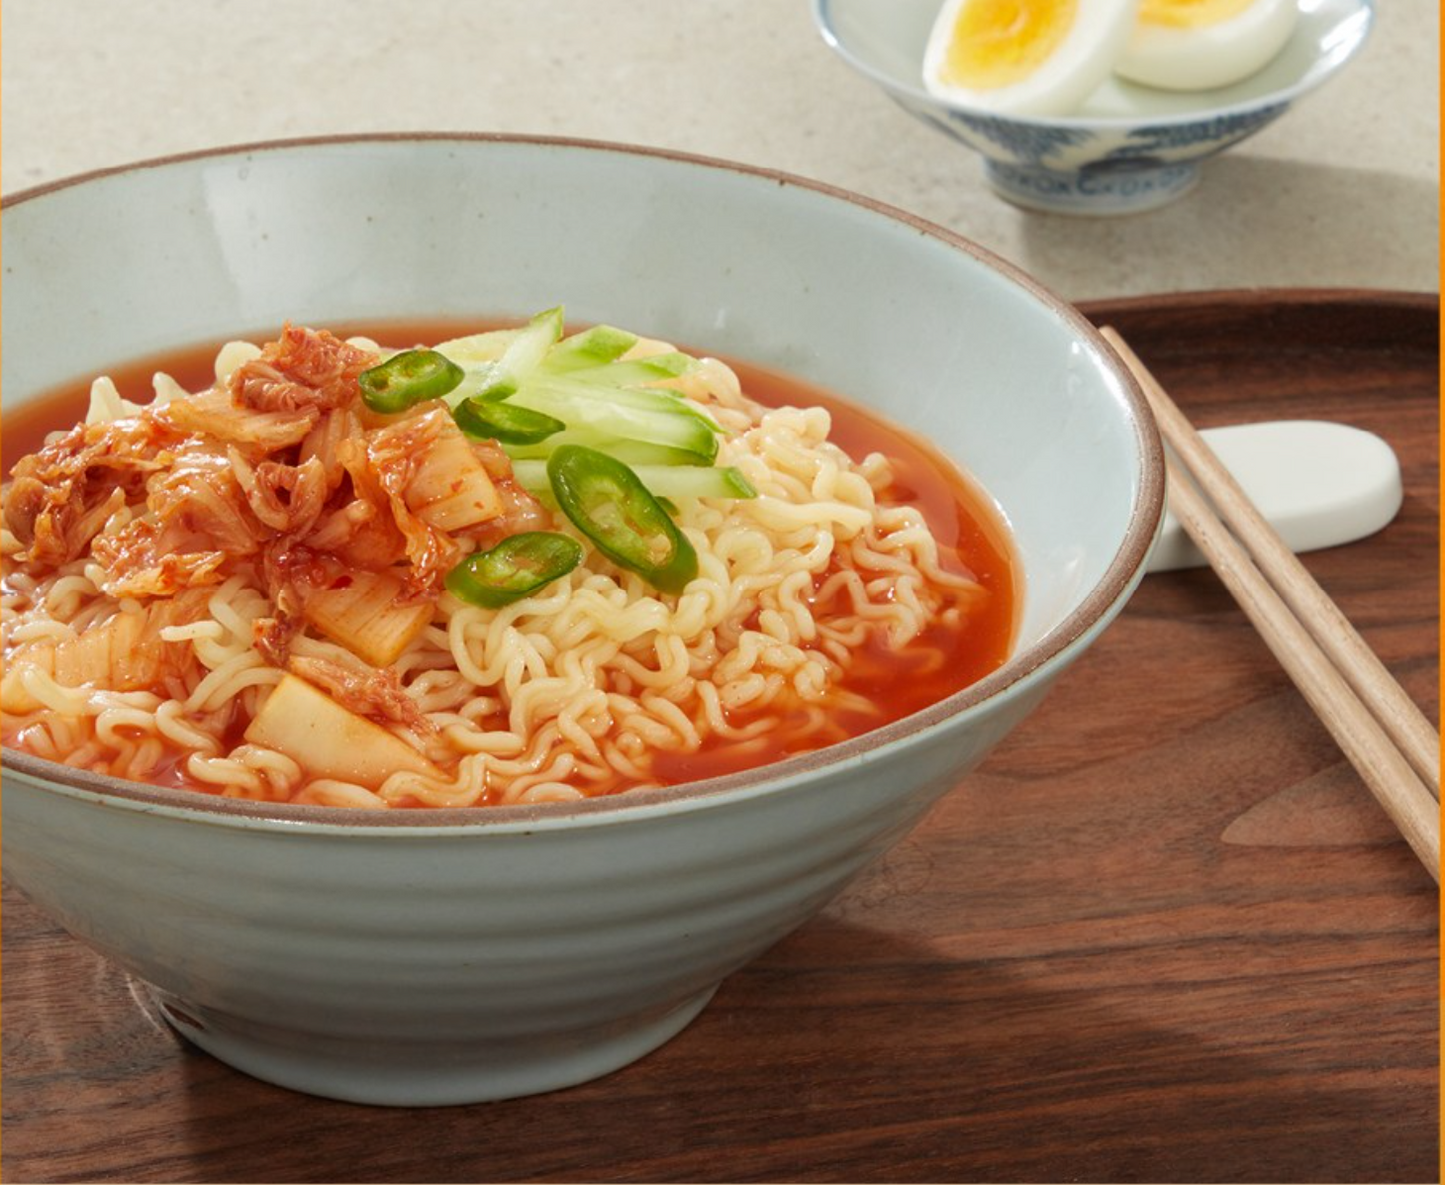 Ottogi Jin Bibim Noodles (오뚜기 진비빔면)